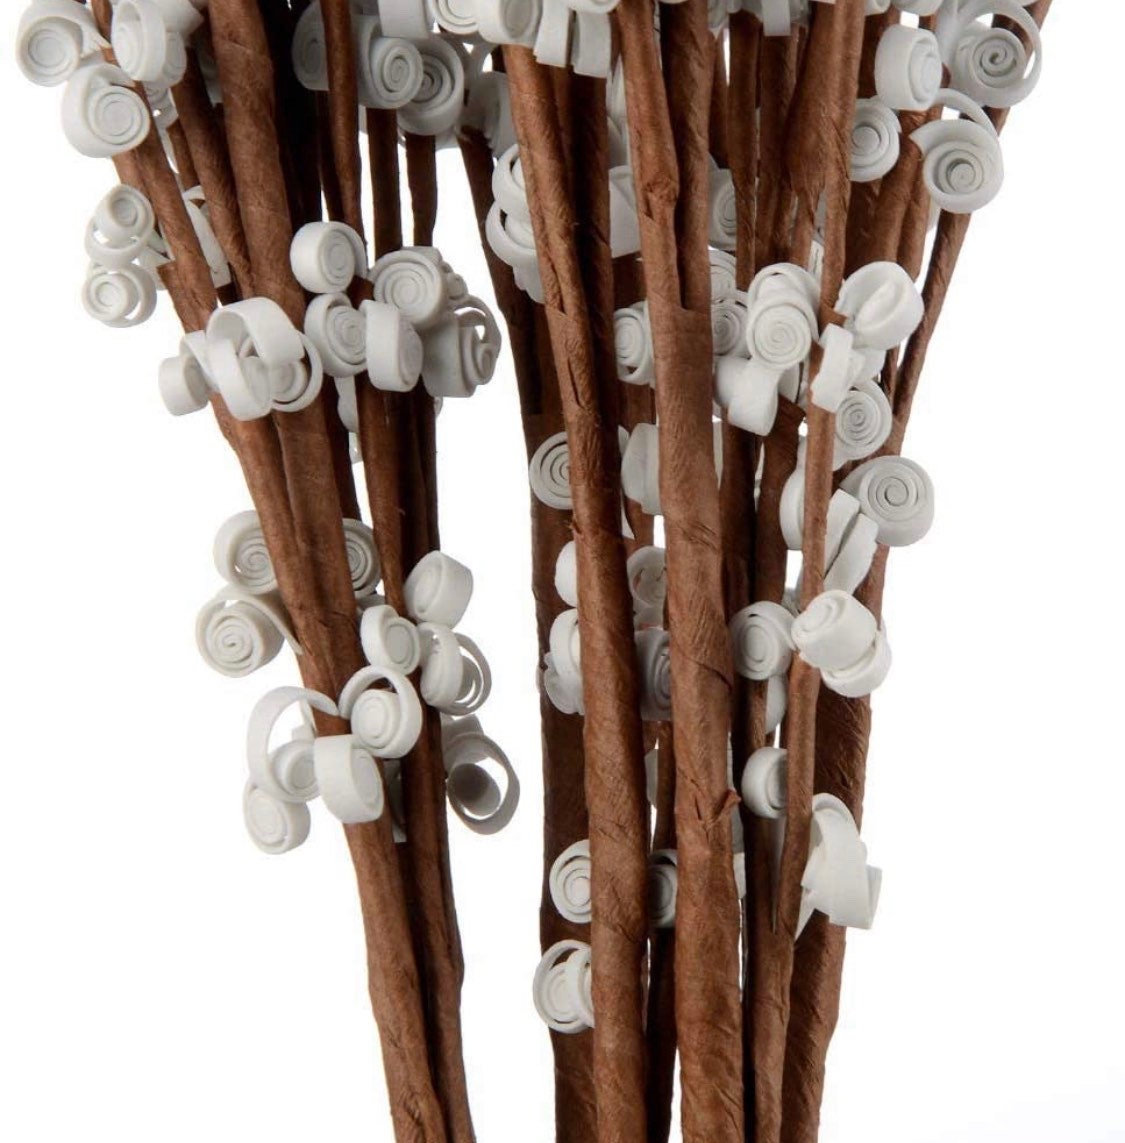 Jasmine flowers - Long stem vase flowers - Fake flower stems - Winter stems - Spring home decor